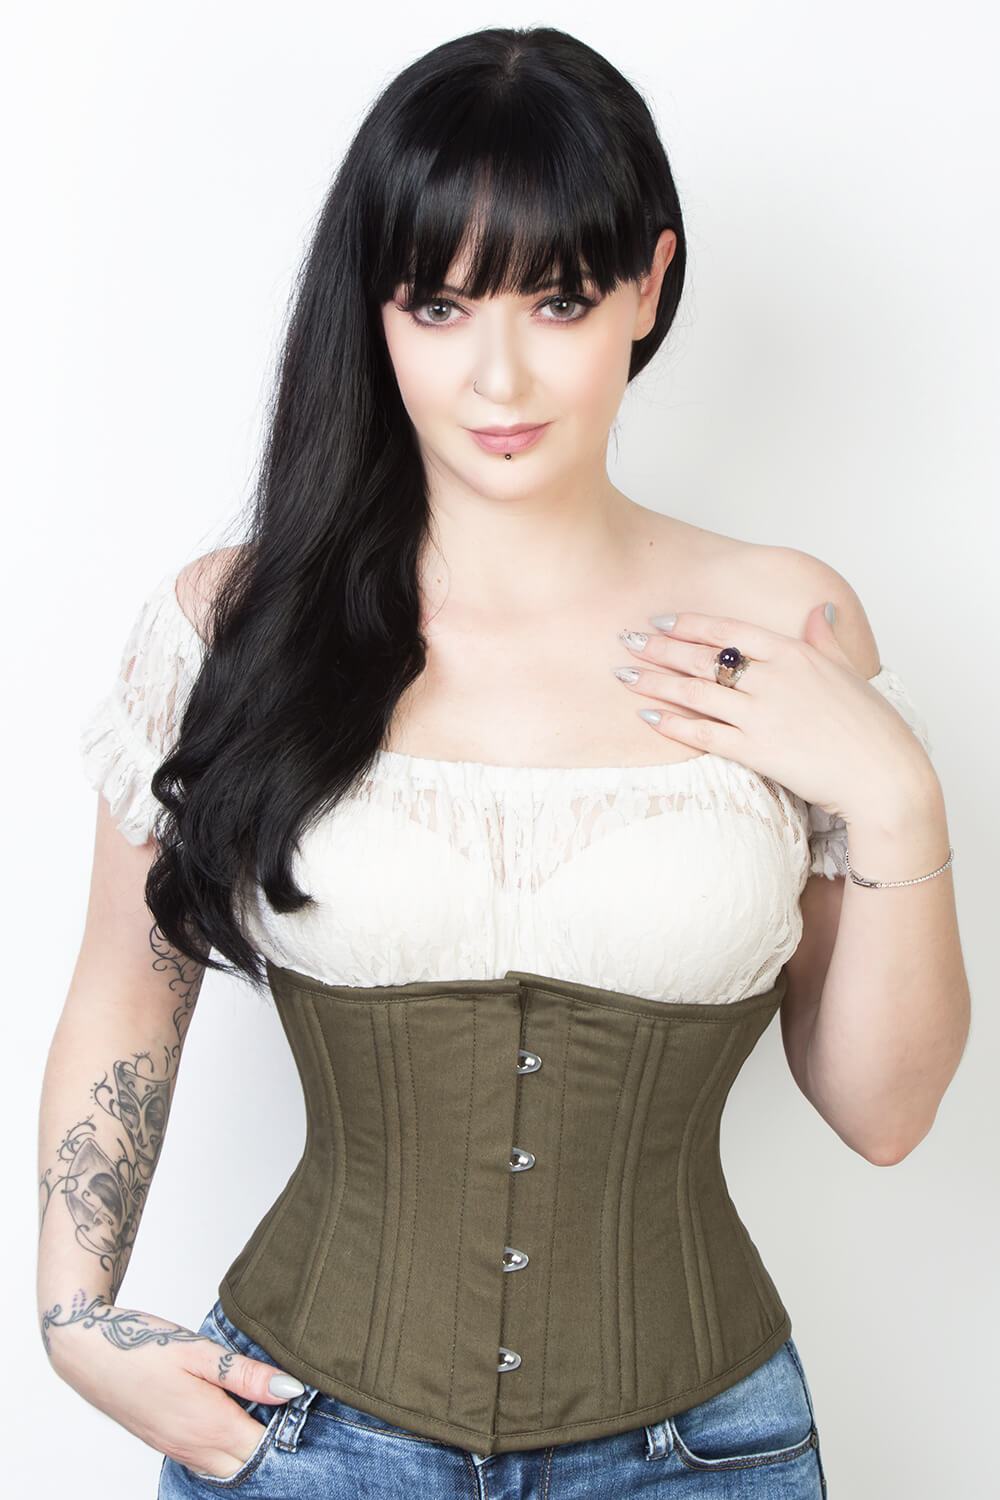 https://www.corsetdeal.com/cdn/shop/products/EL-338_F_Elyzza_London_Corset_Corsetdeal_Bespoke_Corset_waist_training_corset_dc98e48e-5e1e-4c5f-8dfc-c6c411041f89.jpg?v=1555397083